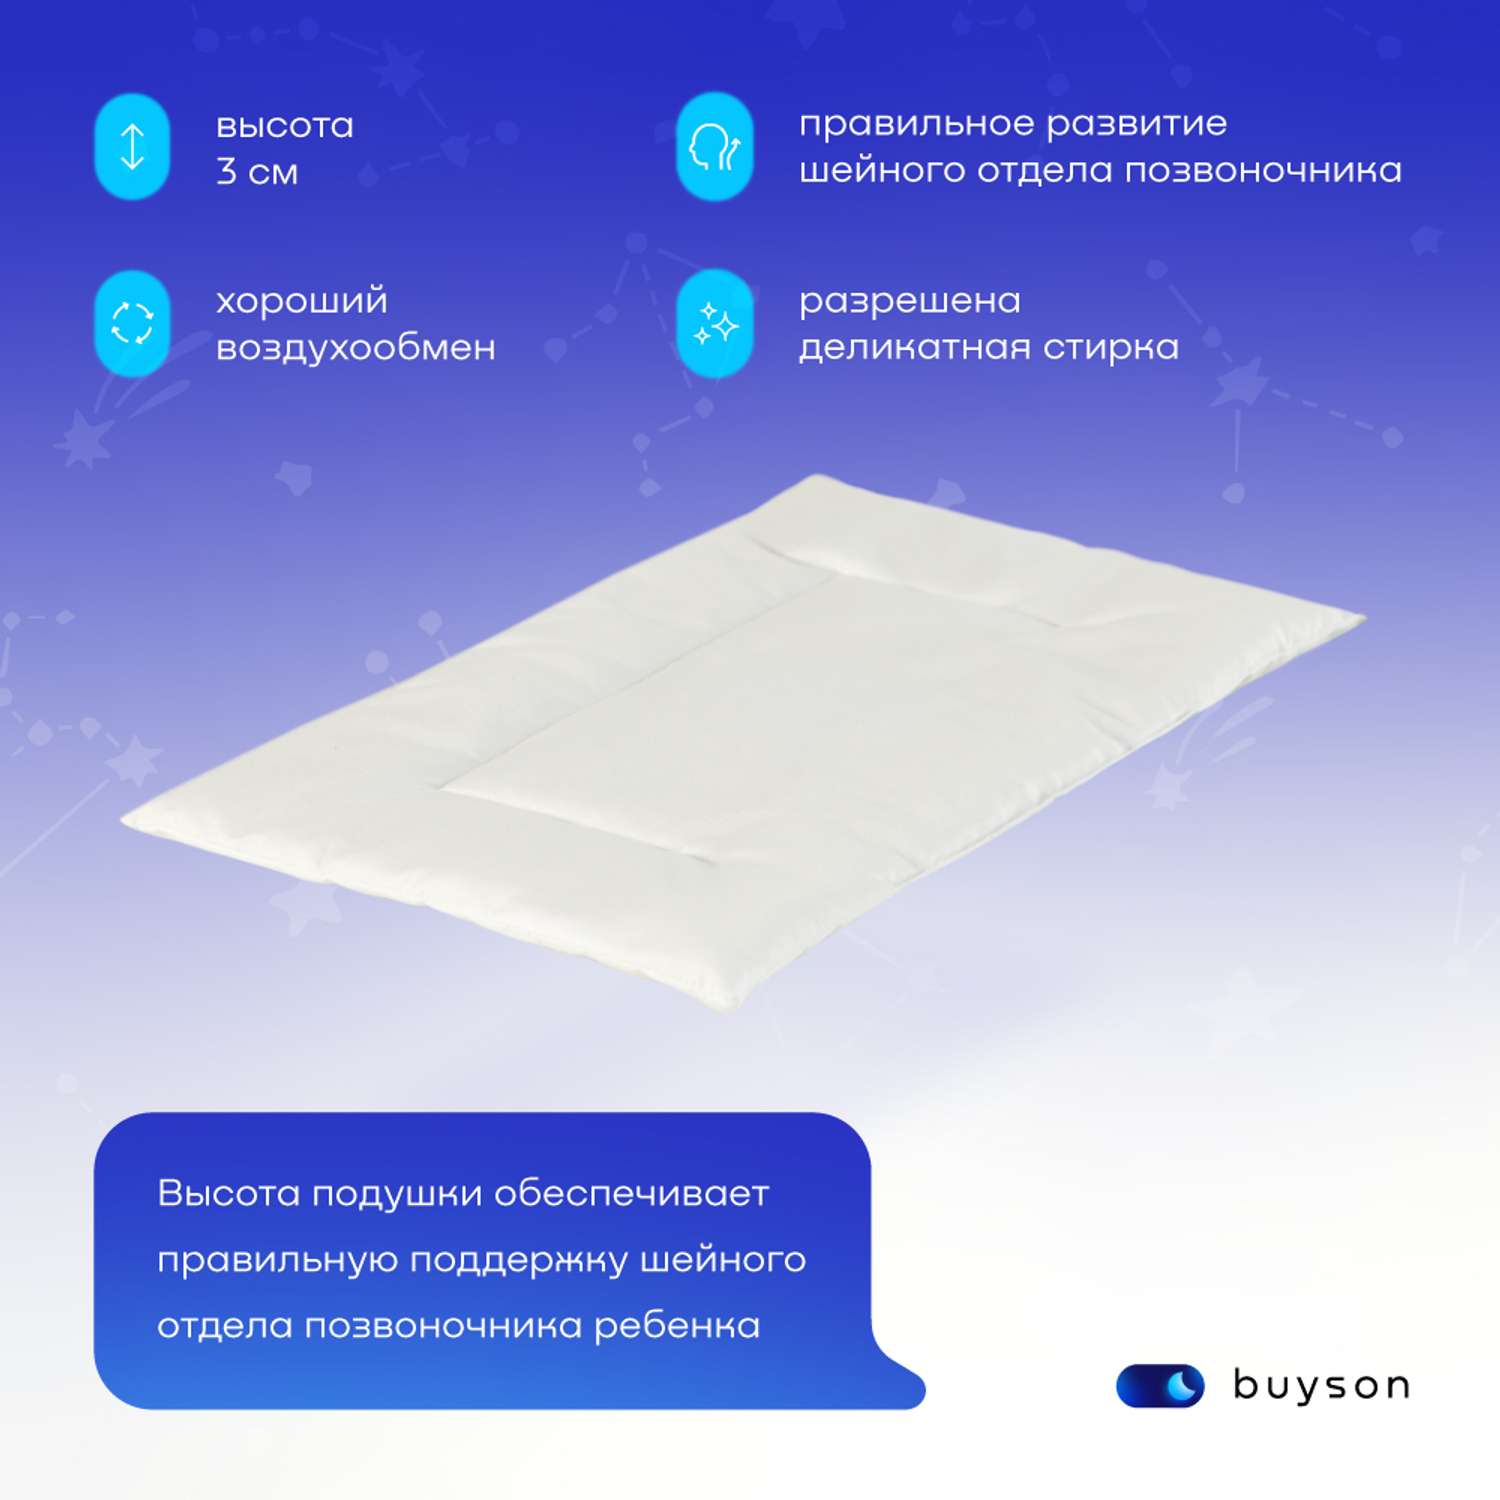 Анатомическая подушка buyson BuyMini для новорожденных от 0 до 3 лет 35х55 см высота 3 см - фото 3